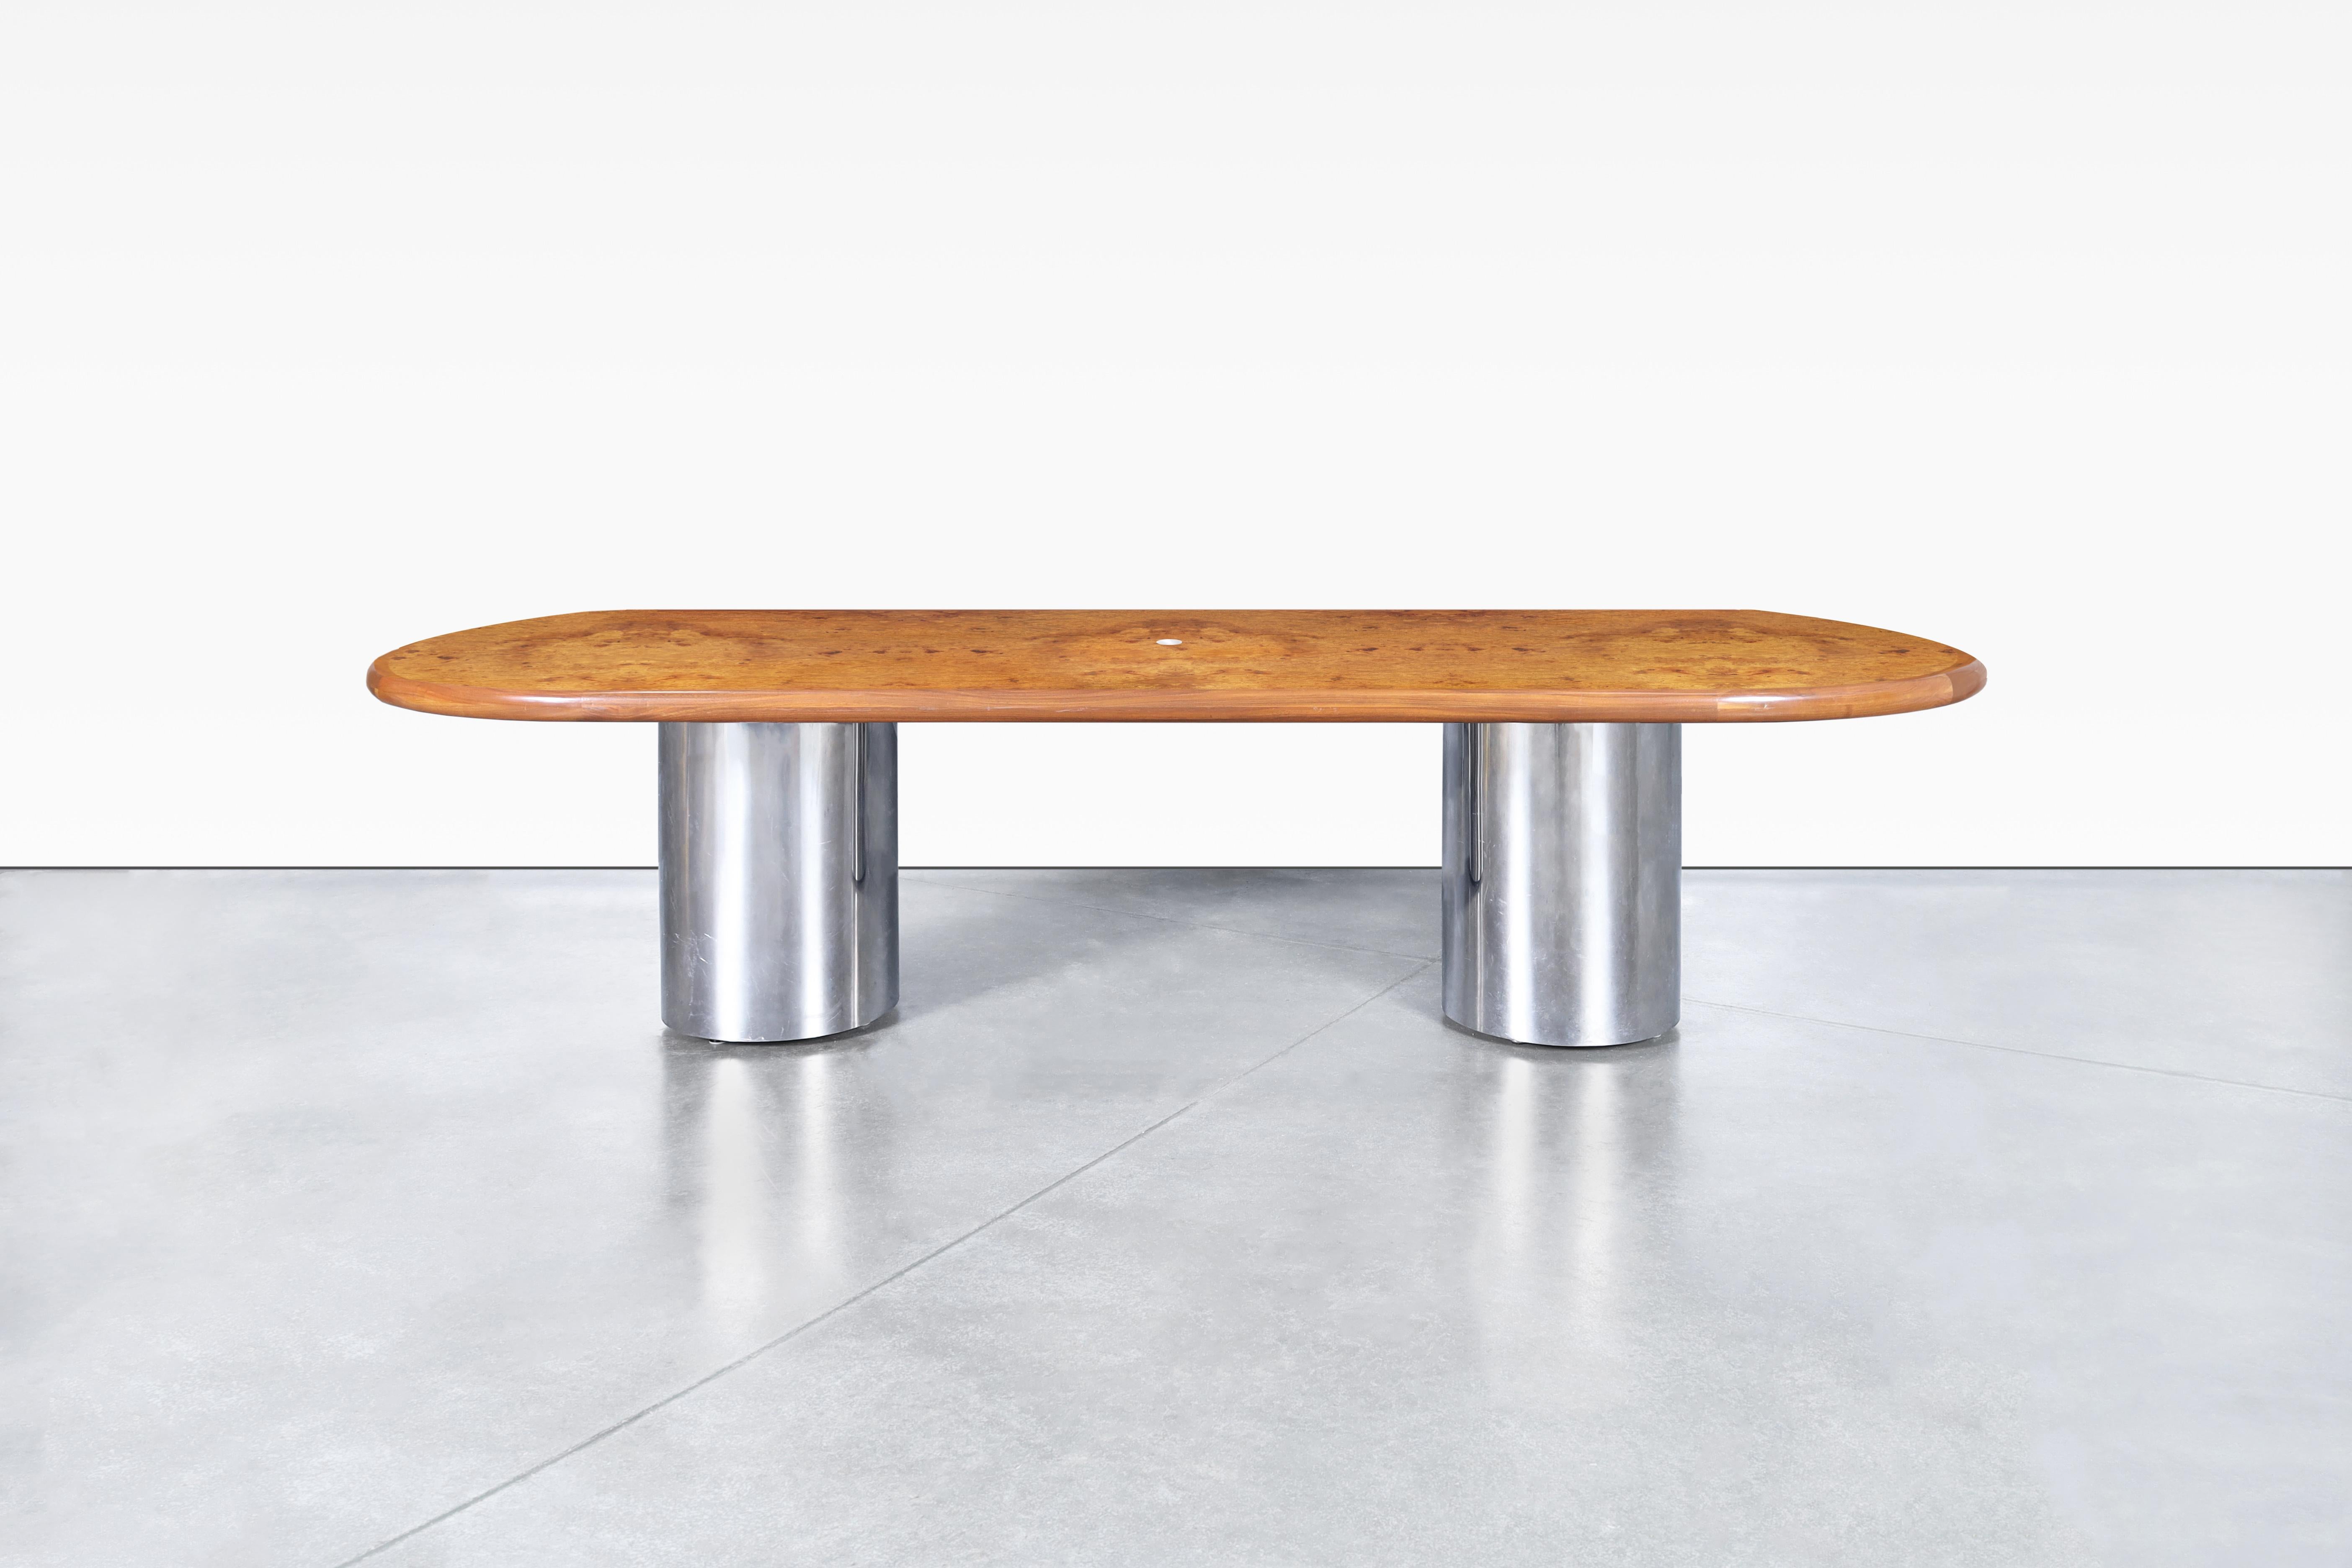 Magnifique table de salle à manger ovale en bois de ronce et chrome de style moderne du milieu du siècle, conçue aux États-Unis, vers les années 1970. Découvrez le summum de l'élégance avec notre table de salle à manger ovale méticuleusement